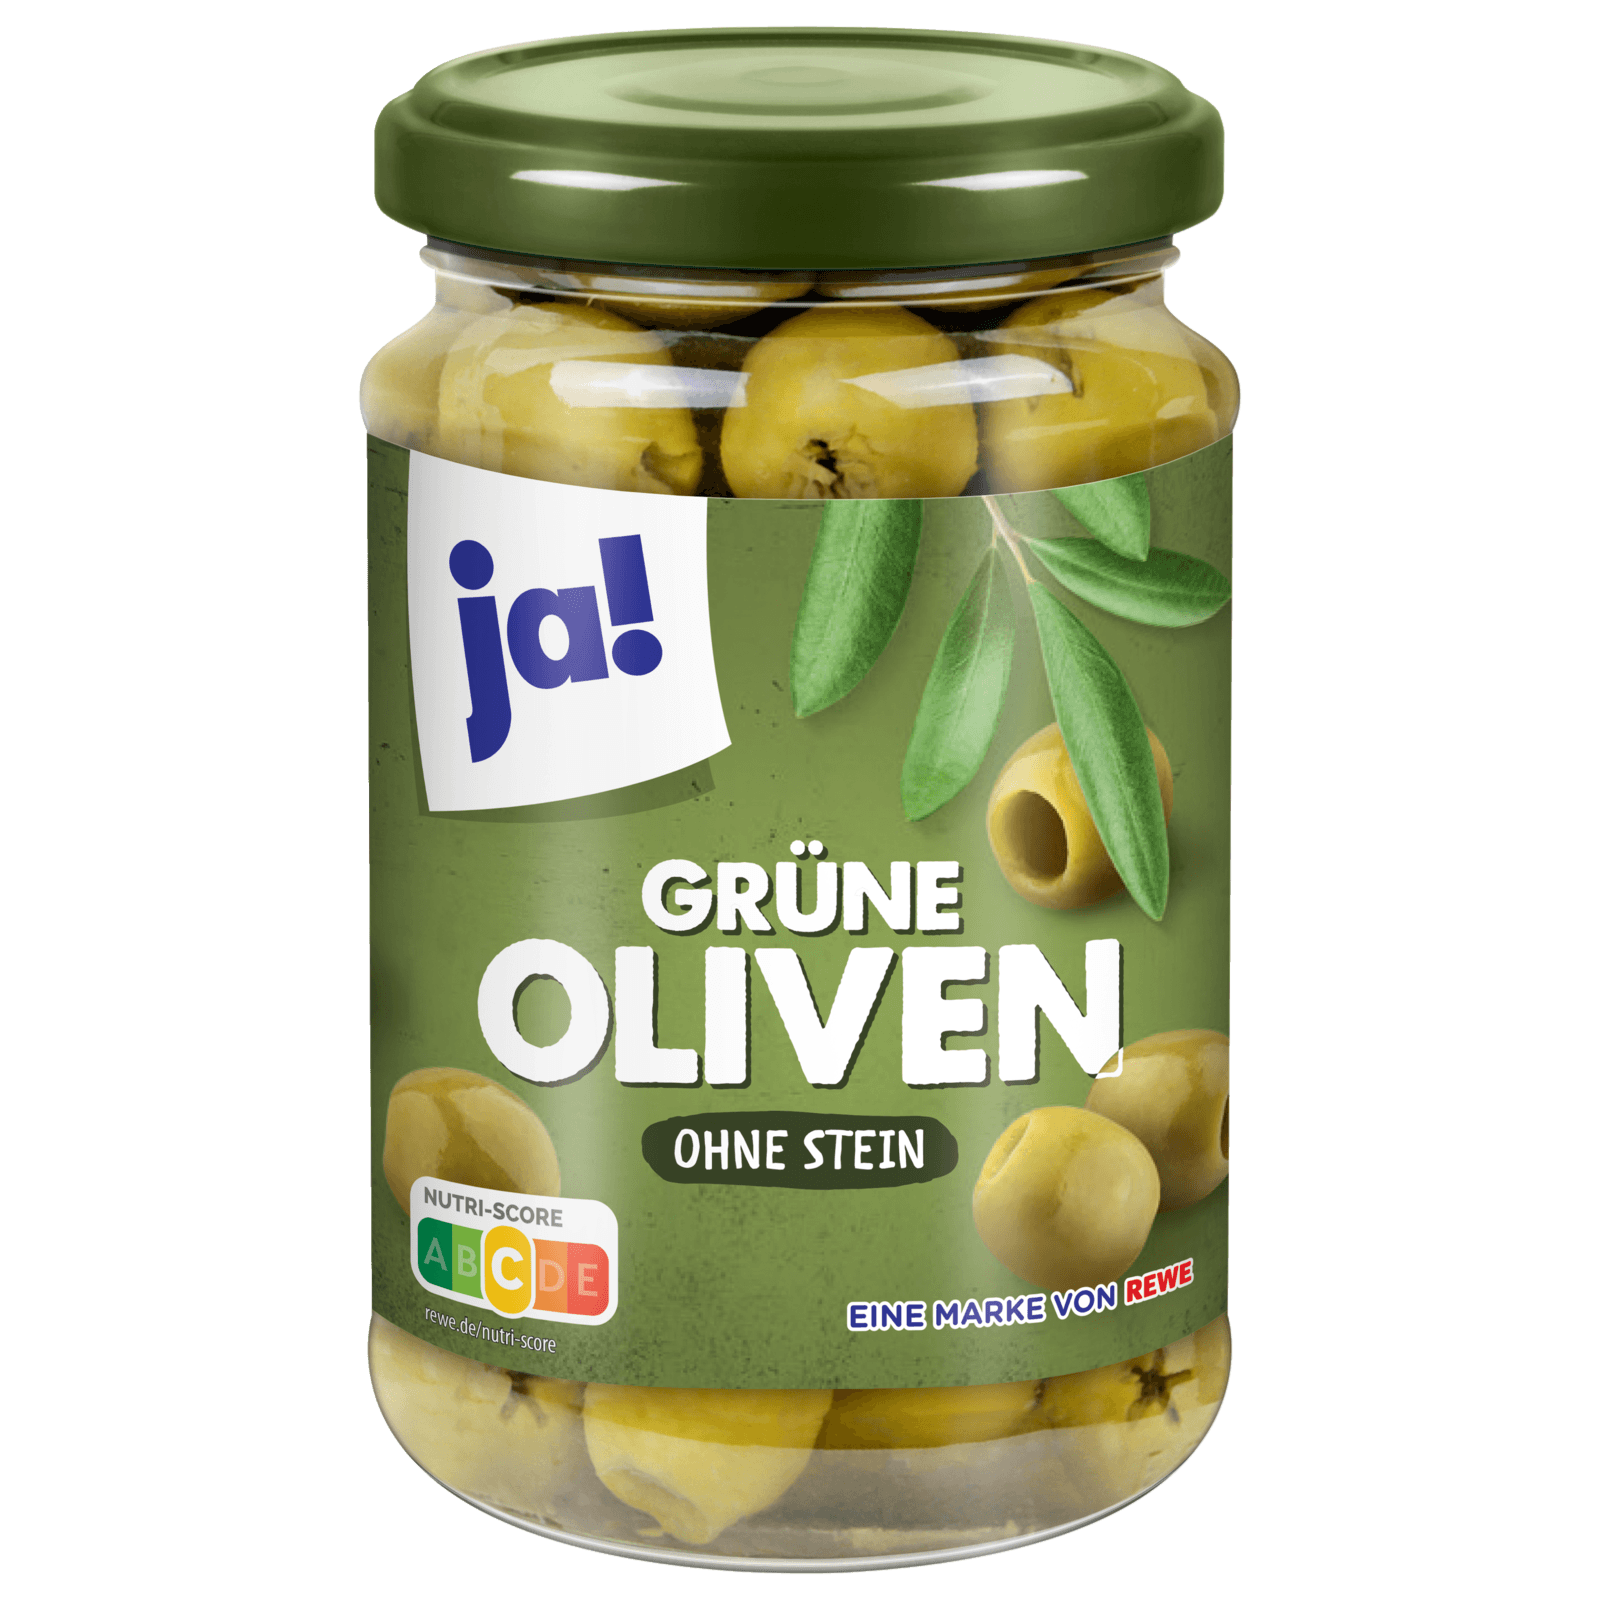 Ja! Oliven grün ohne Stein 170g bei REWE online bestellen!